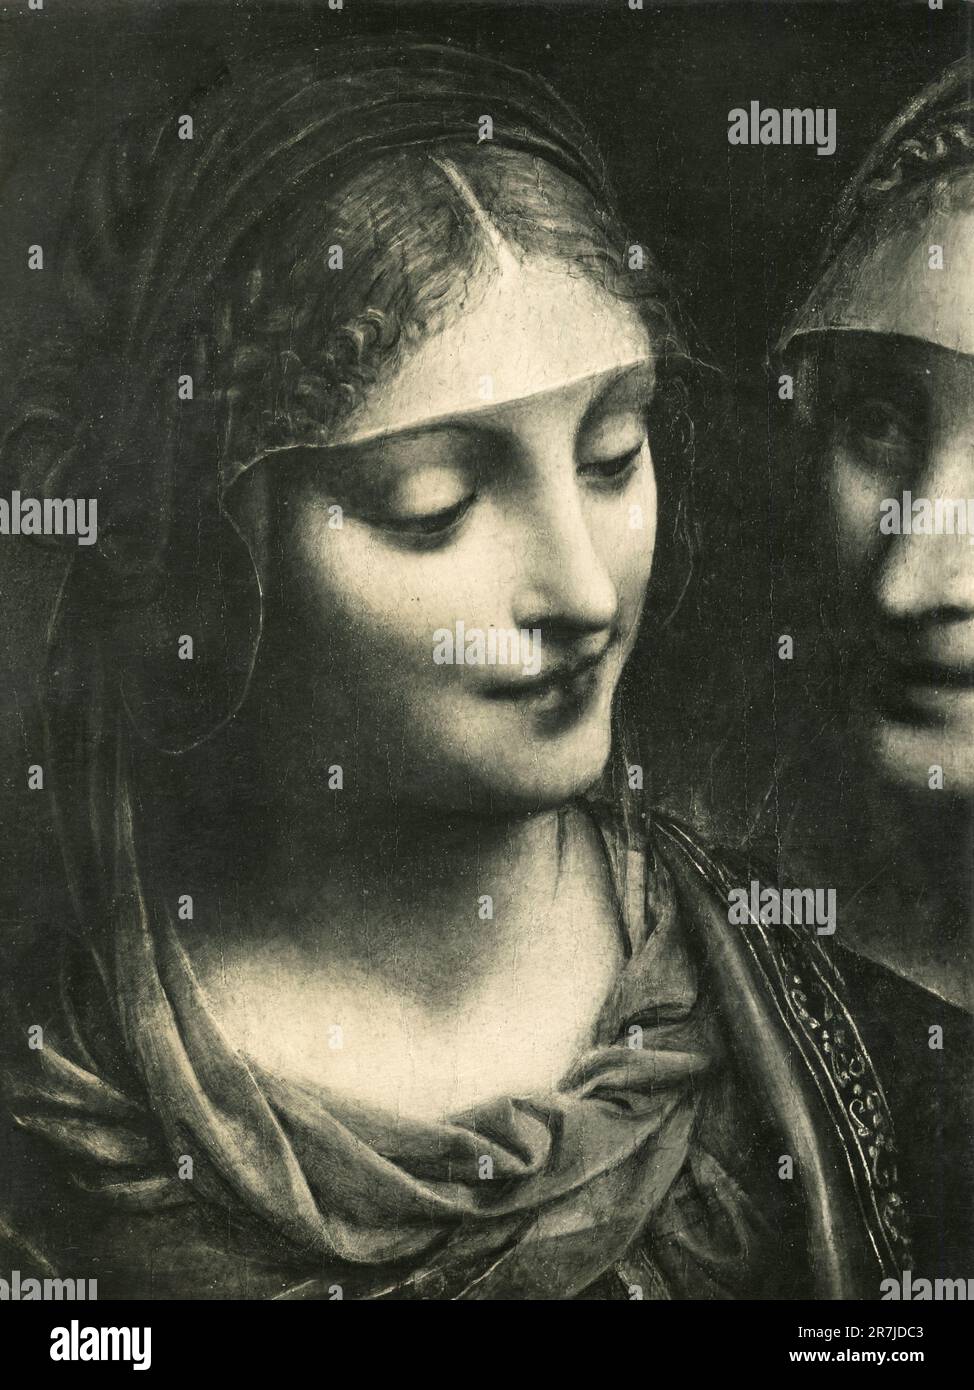 Chef de la Vierge, détail de la peinture Sainte famille, par l'artiste italien Bernardino Luini, Pinacoteca Ambrosiana, Milan, Italie 1900s Banque D'Images